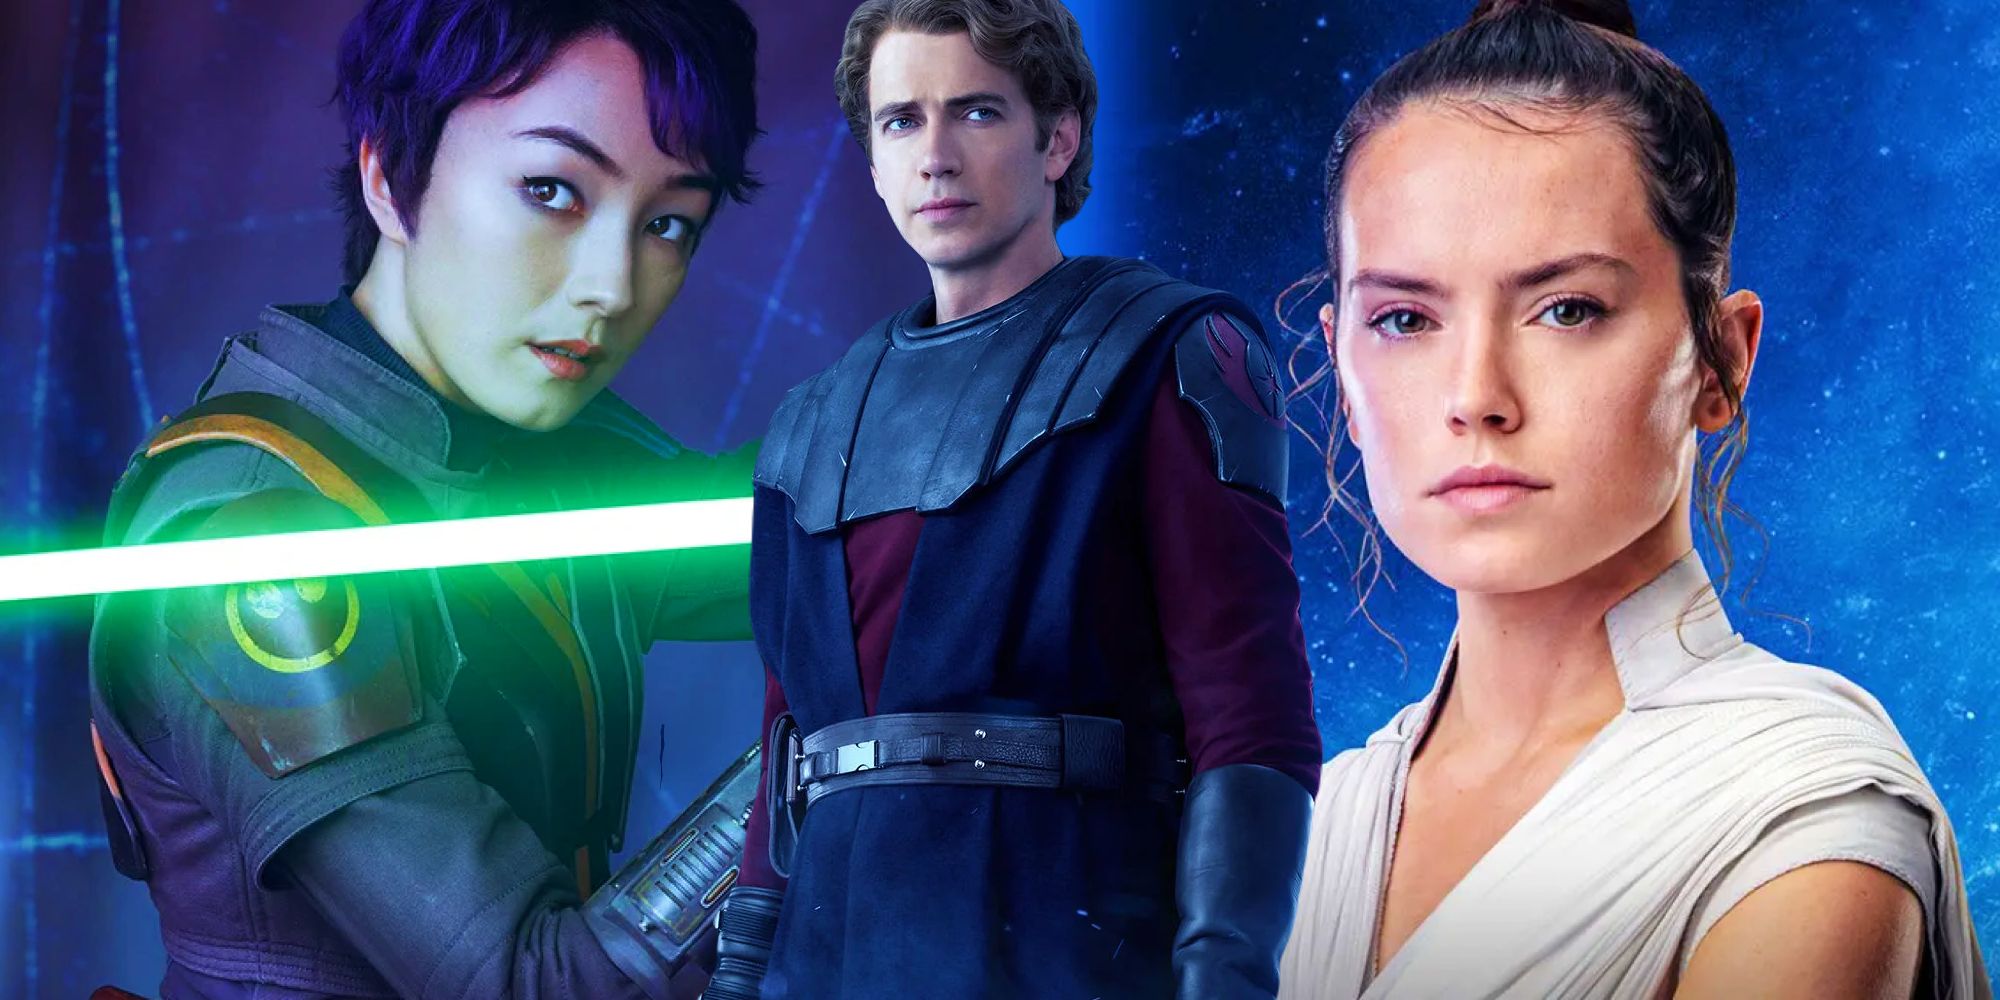 "Todos pueden convertirse en Jedi": Ahsoka Showrunner explica cómo la trama Jedi de Sabine abre la Fuerza de par en par